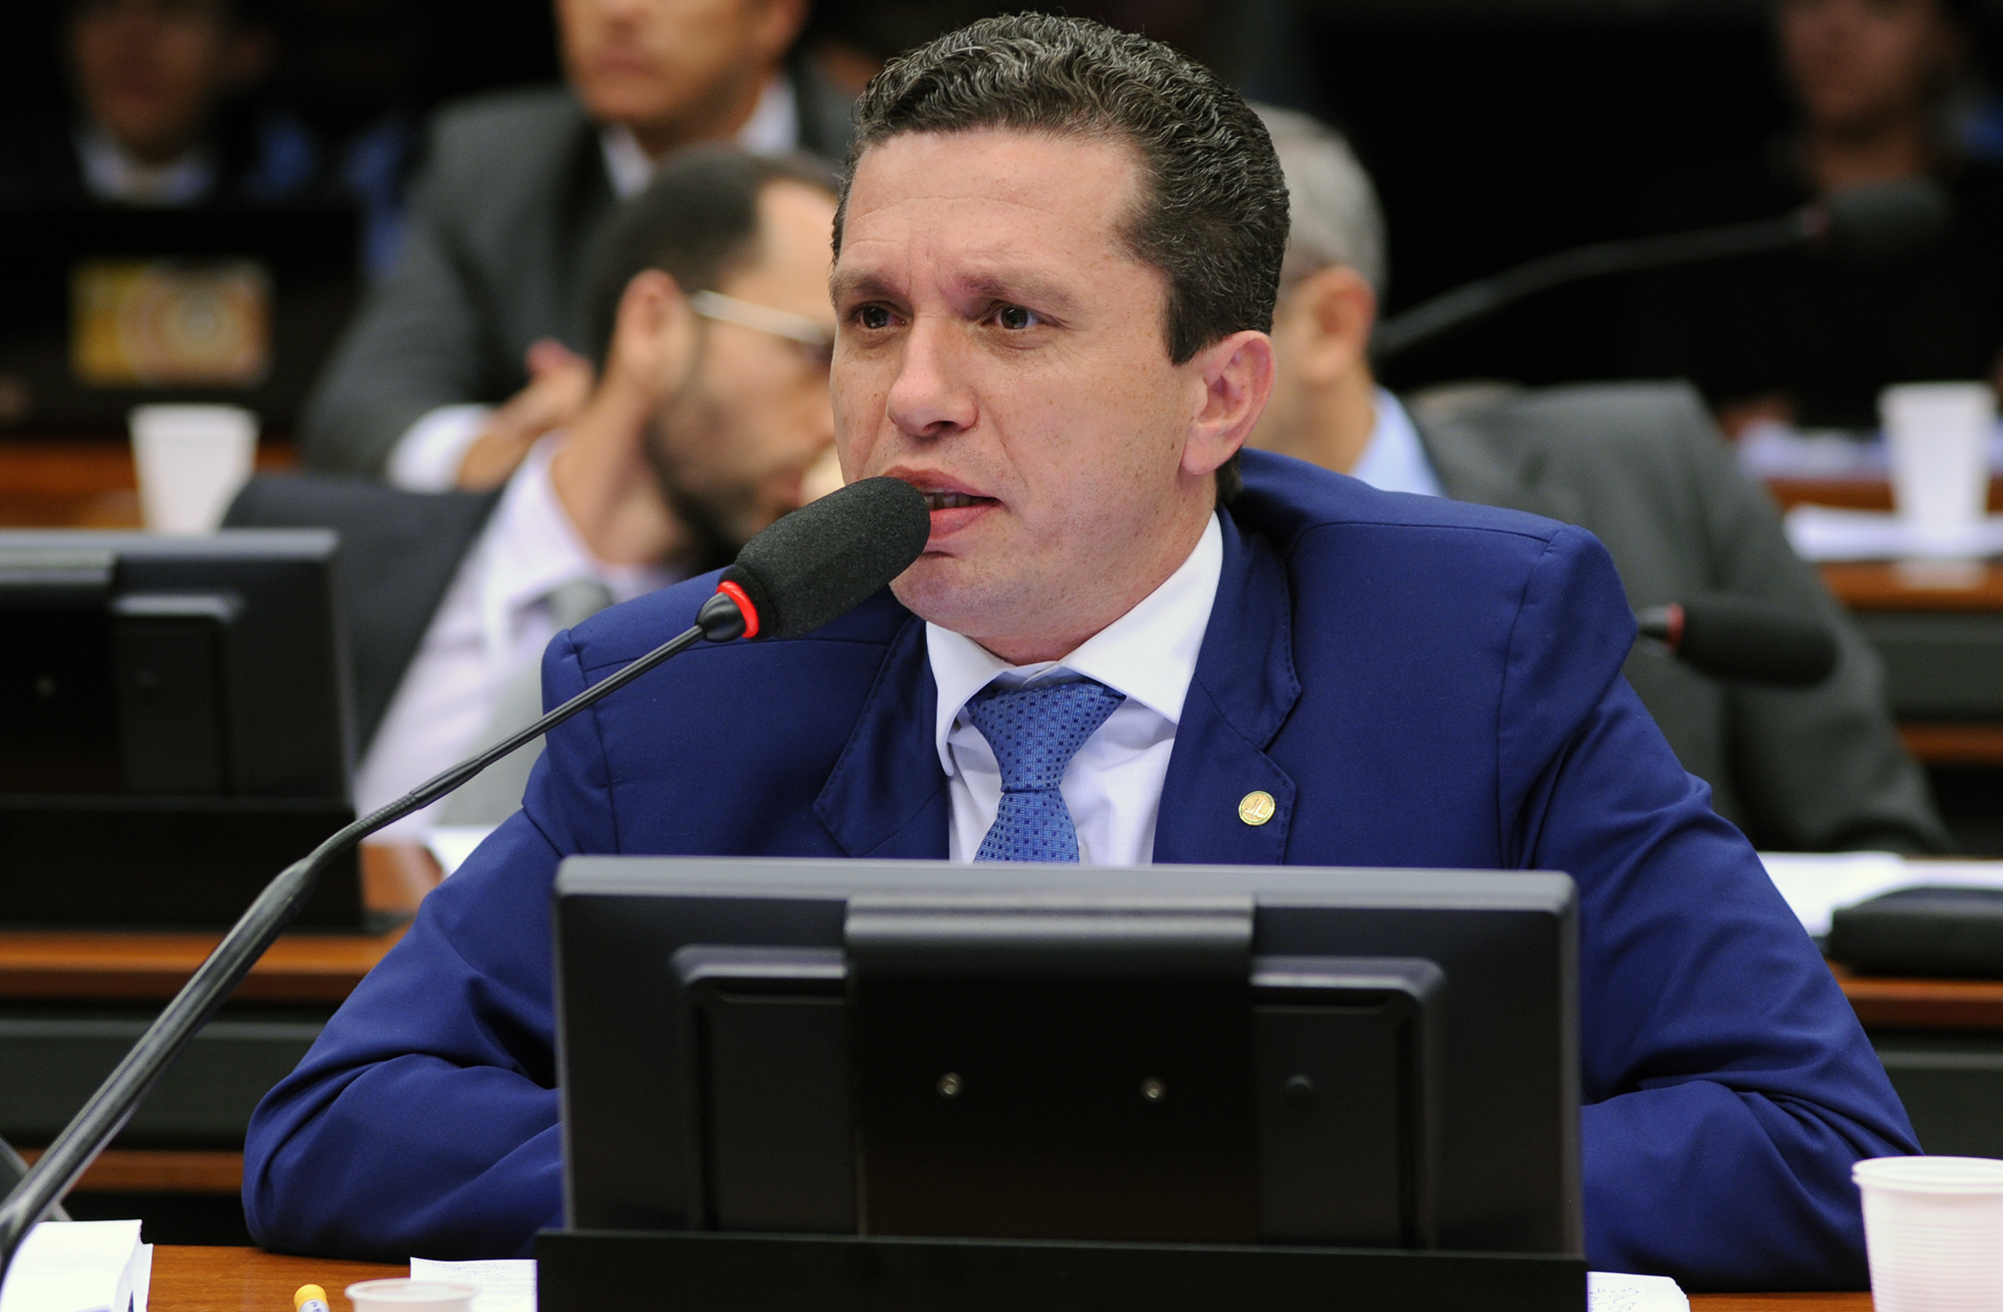 Vacinação: Fausto Pinato pede ao Ministério da Saúde prioridade aos caminhoneiros